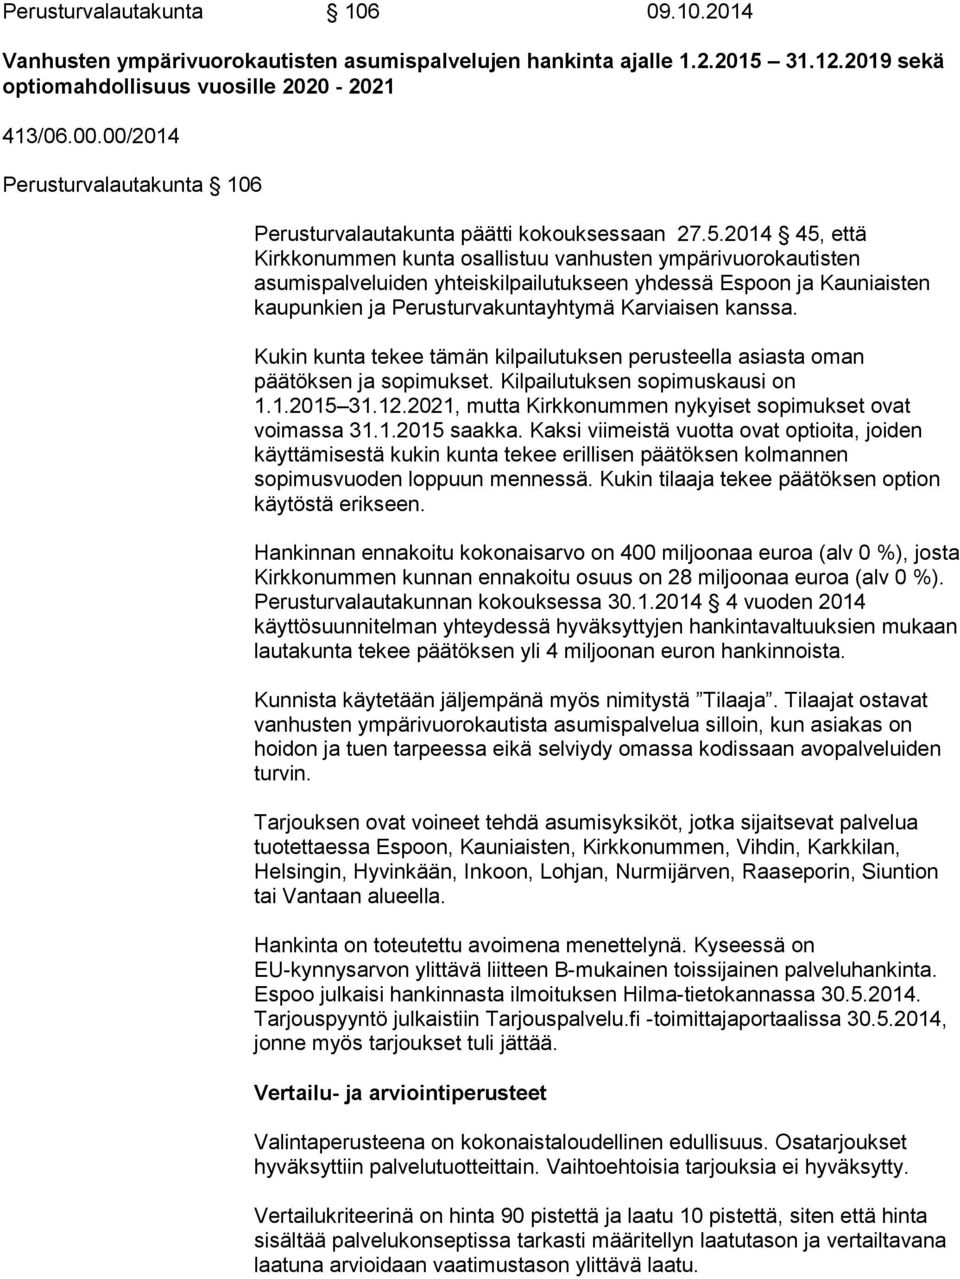 2014 45, että Kirkkonummen kunta osallistuu vanhusten ympärivuorokautisten asumispalveluiden yhteiskilpailutukseen yhdessä Espoon ja Kauniaisten kaupunkien ja Perusturvakuntayhtymä Karviaisen kanssa.